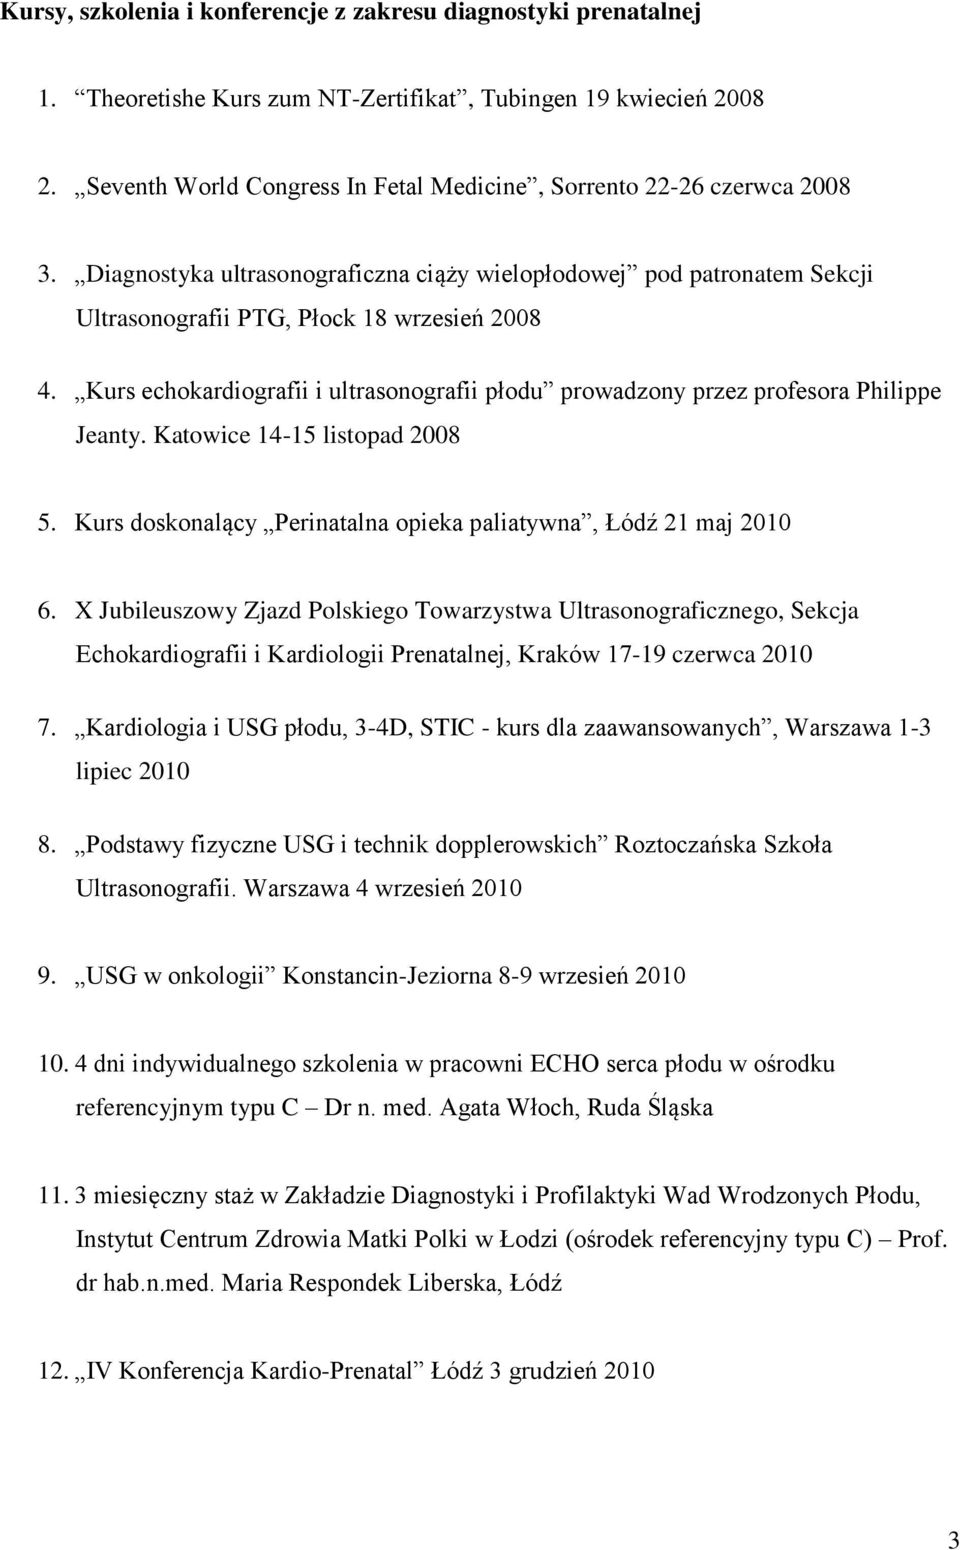 Kurs echokardiografii i ultrasonografii płodu prowadzony przez profesora Philippe Jeanty. Katowice 14-15 listopad 2008 5. Kurs doskonalący Perinatalna opieka paliatywna, Łódź 21 maj 2010 6.